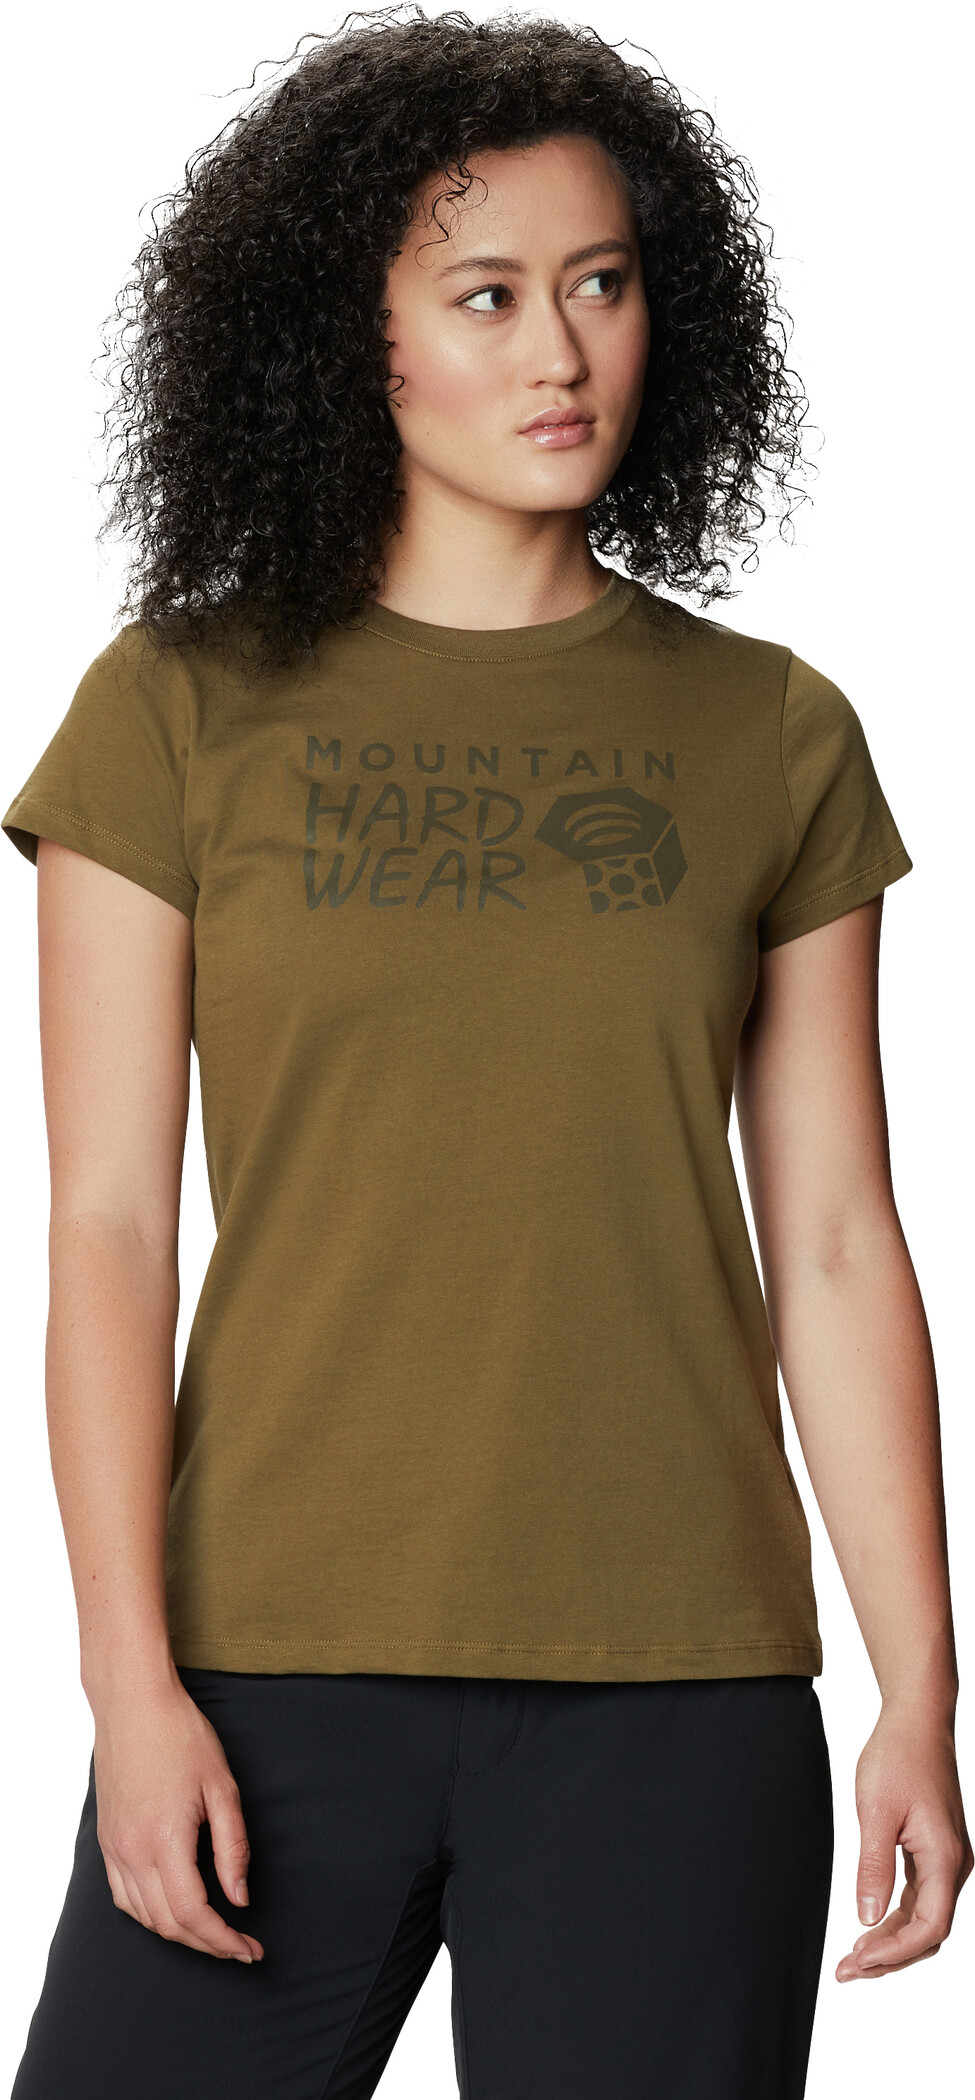 Mountain Hardwear kläder & utrustning |